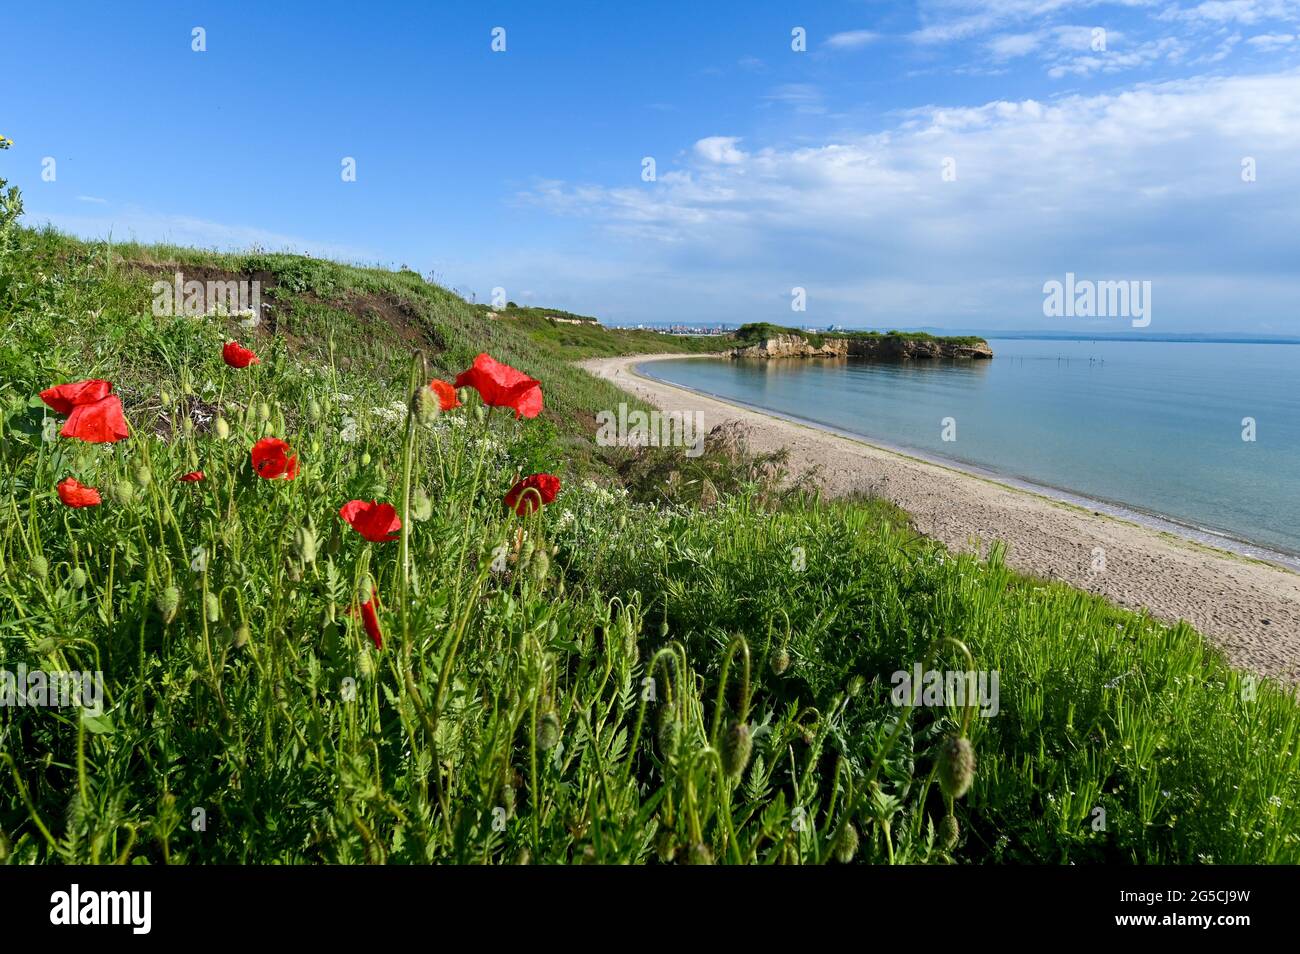 Mare delle rocce sulla costa di Kraimorie, regione di Burgas, Bulgaria. La bellissima spiaggia del mare nero con fiori di papavero selvaggi. Foto Stock